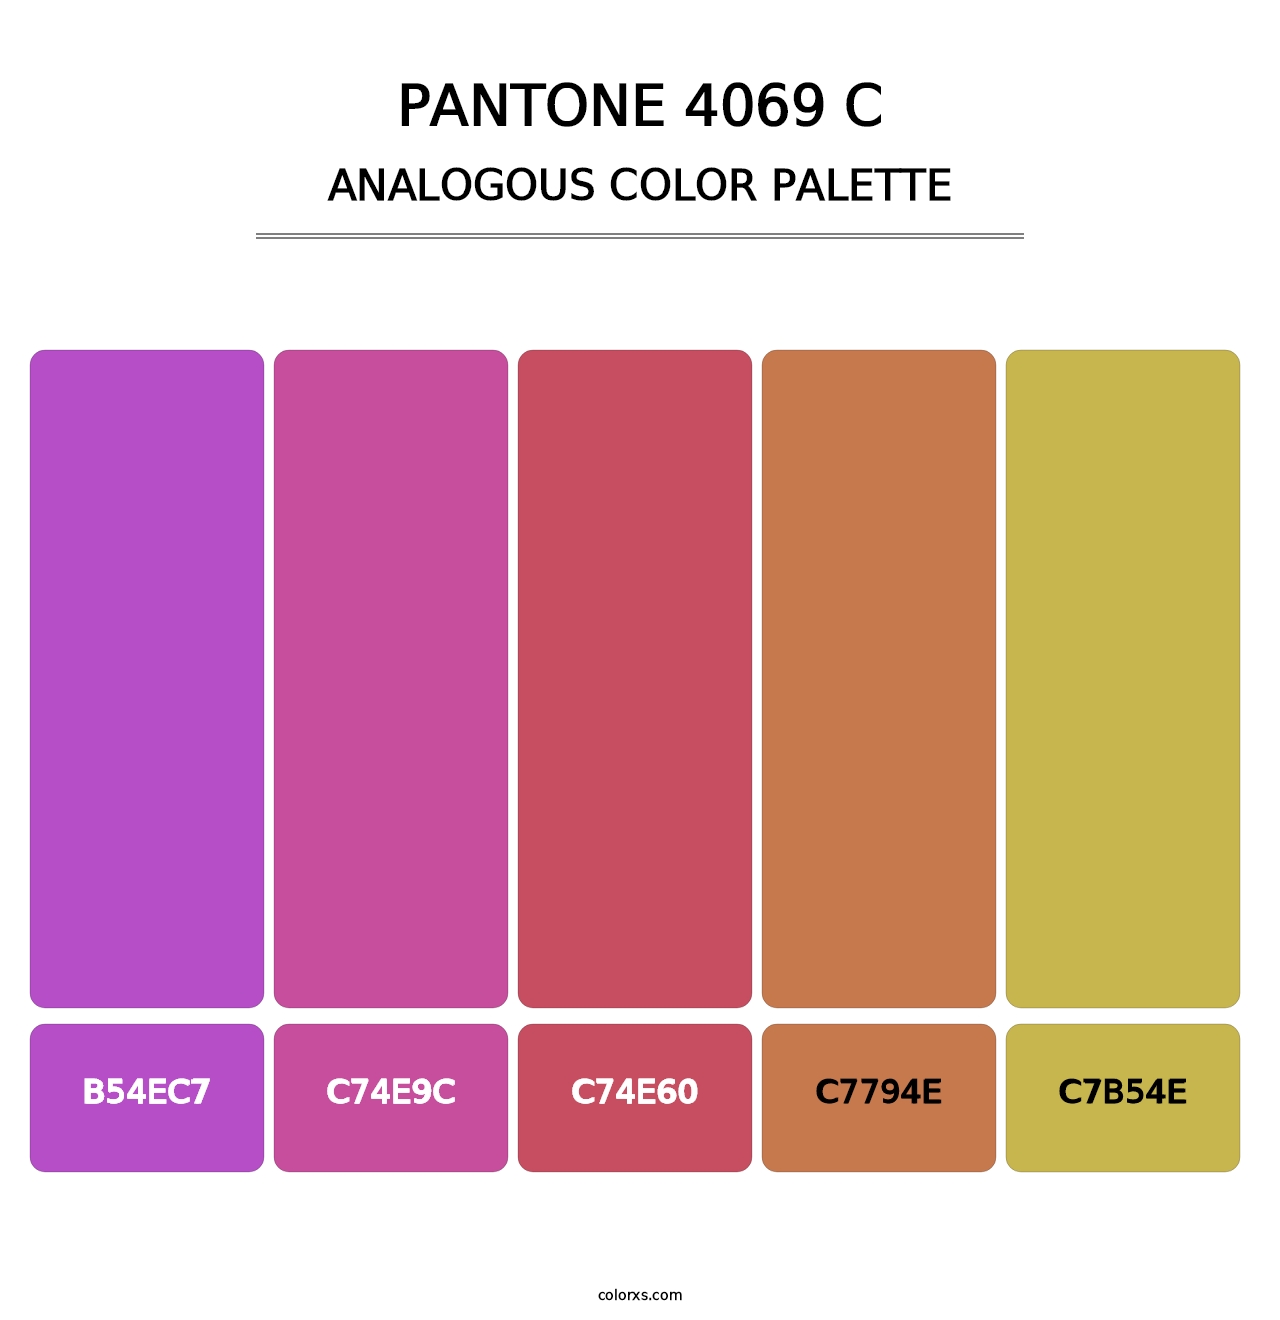 PANTONE 4069 C - Analogous Color Palette